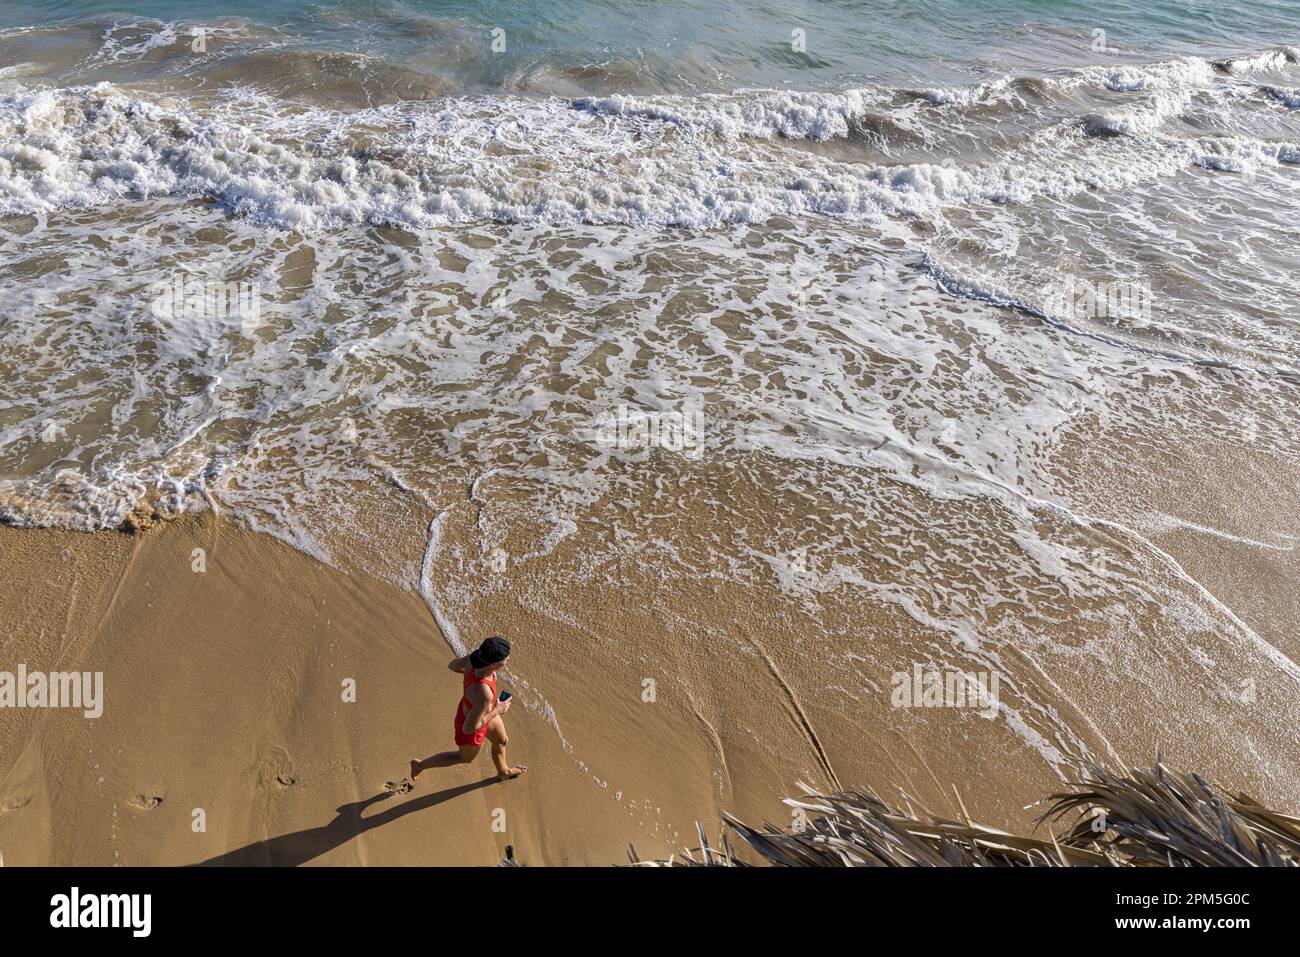 Cerca de la mujer corriendo en la playa Fotografía de stock - Alamy